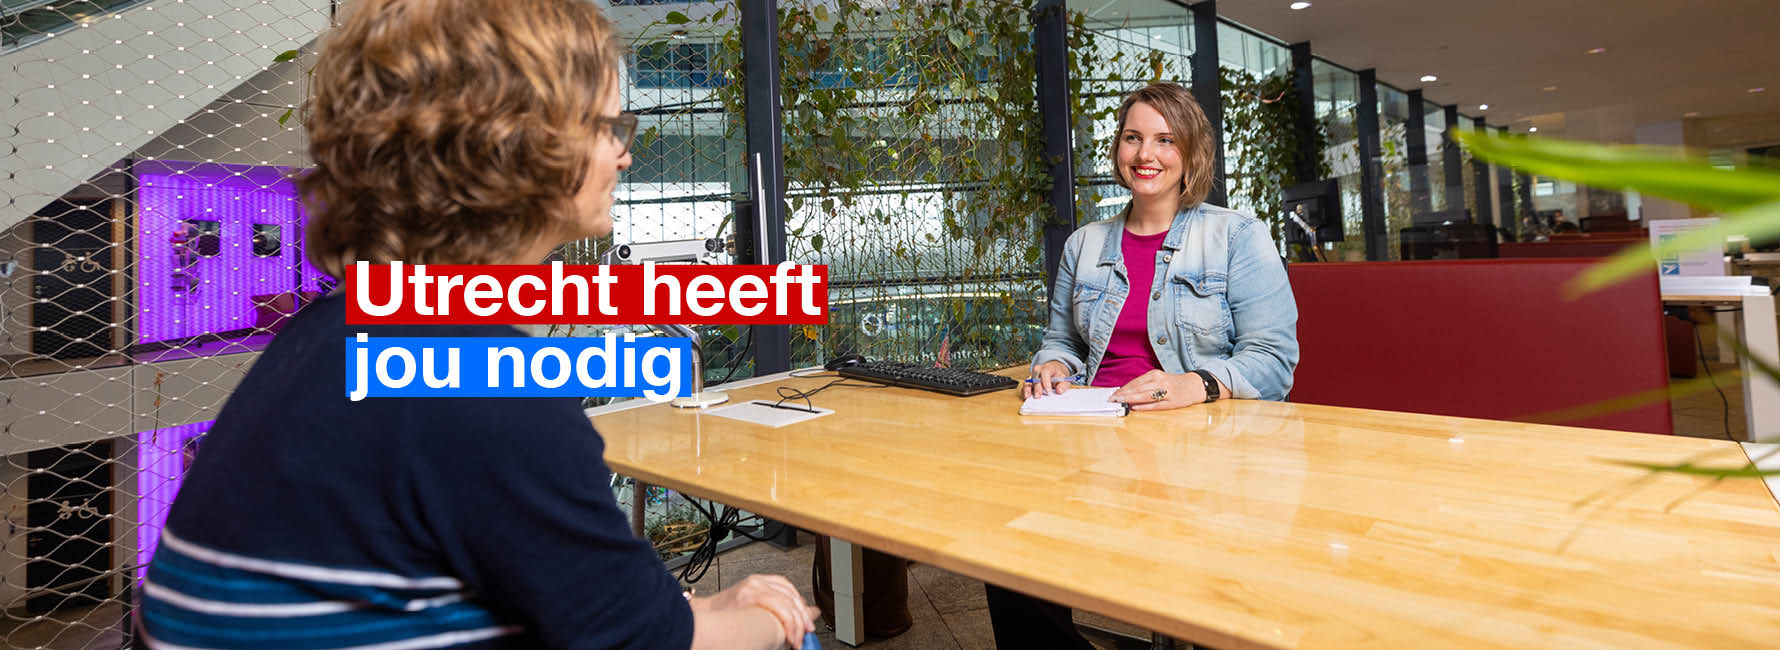 Twee mensen aan een tafel in het stadskantoor. In beeld staat de tekst Utrecht heeft jou nodig.